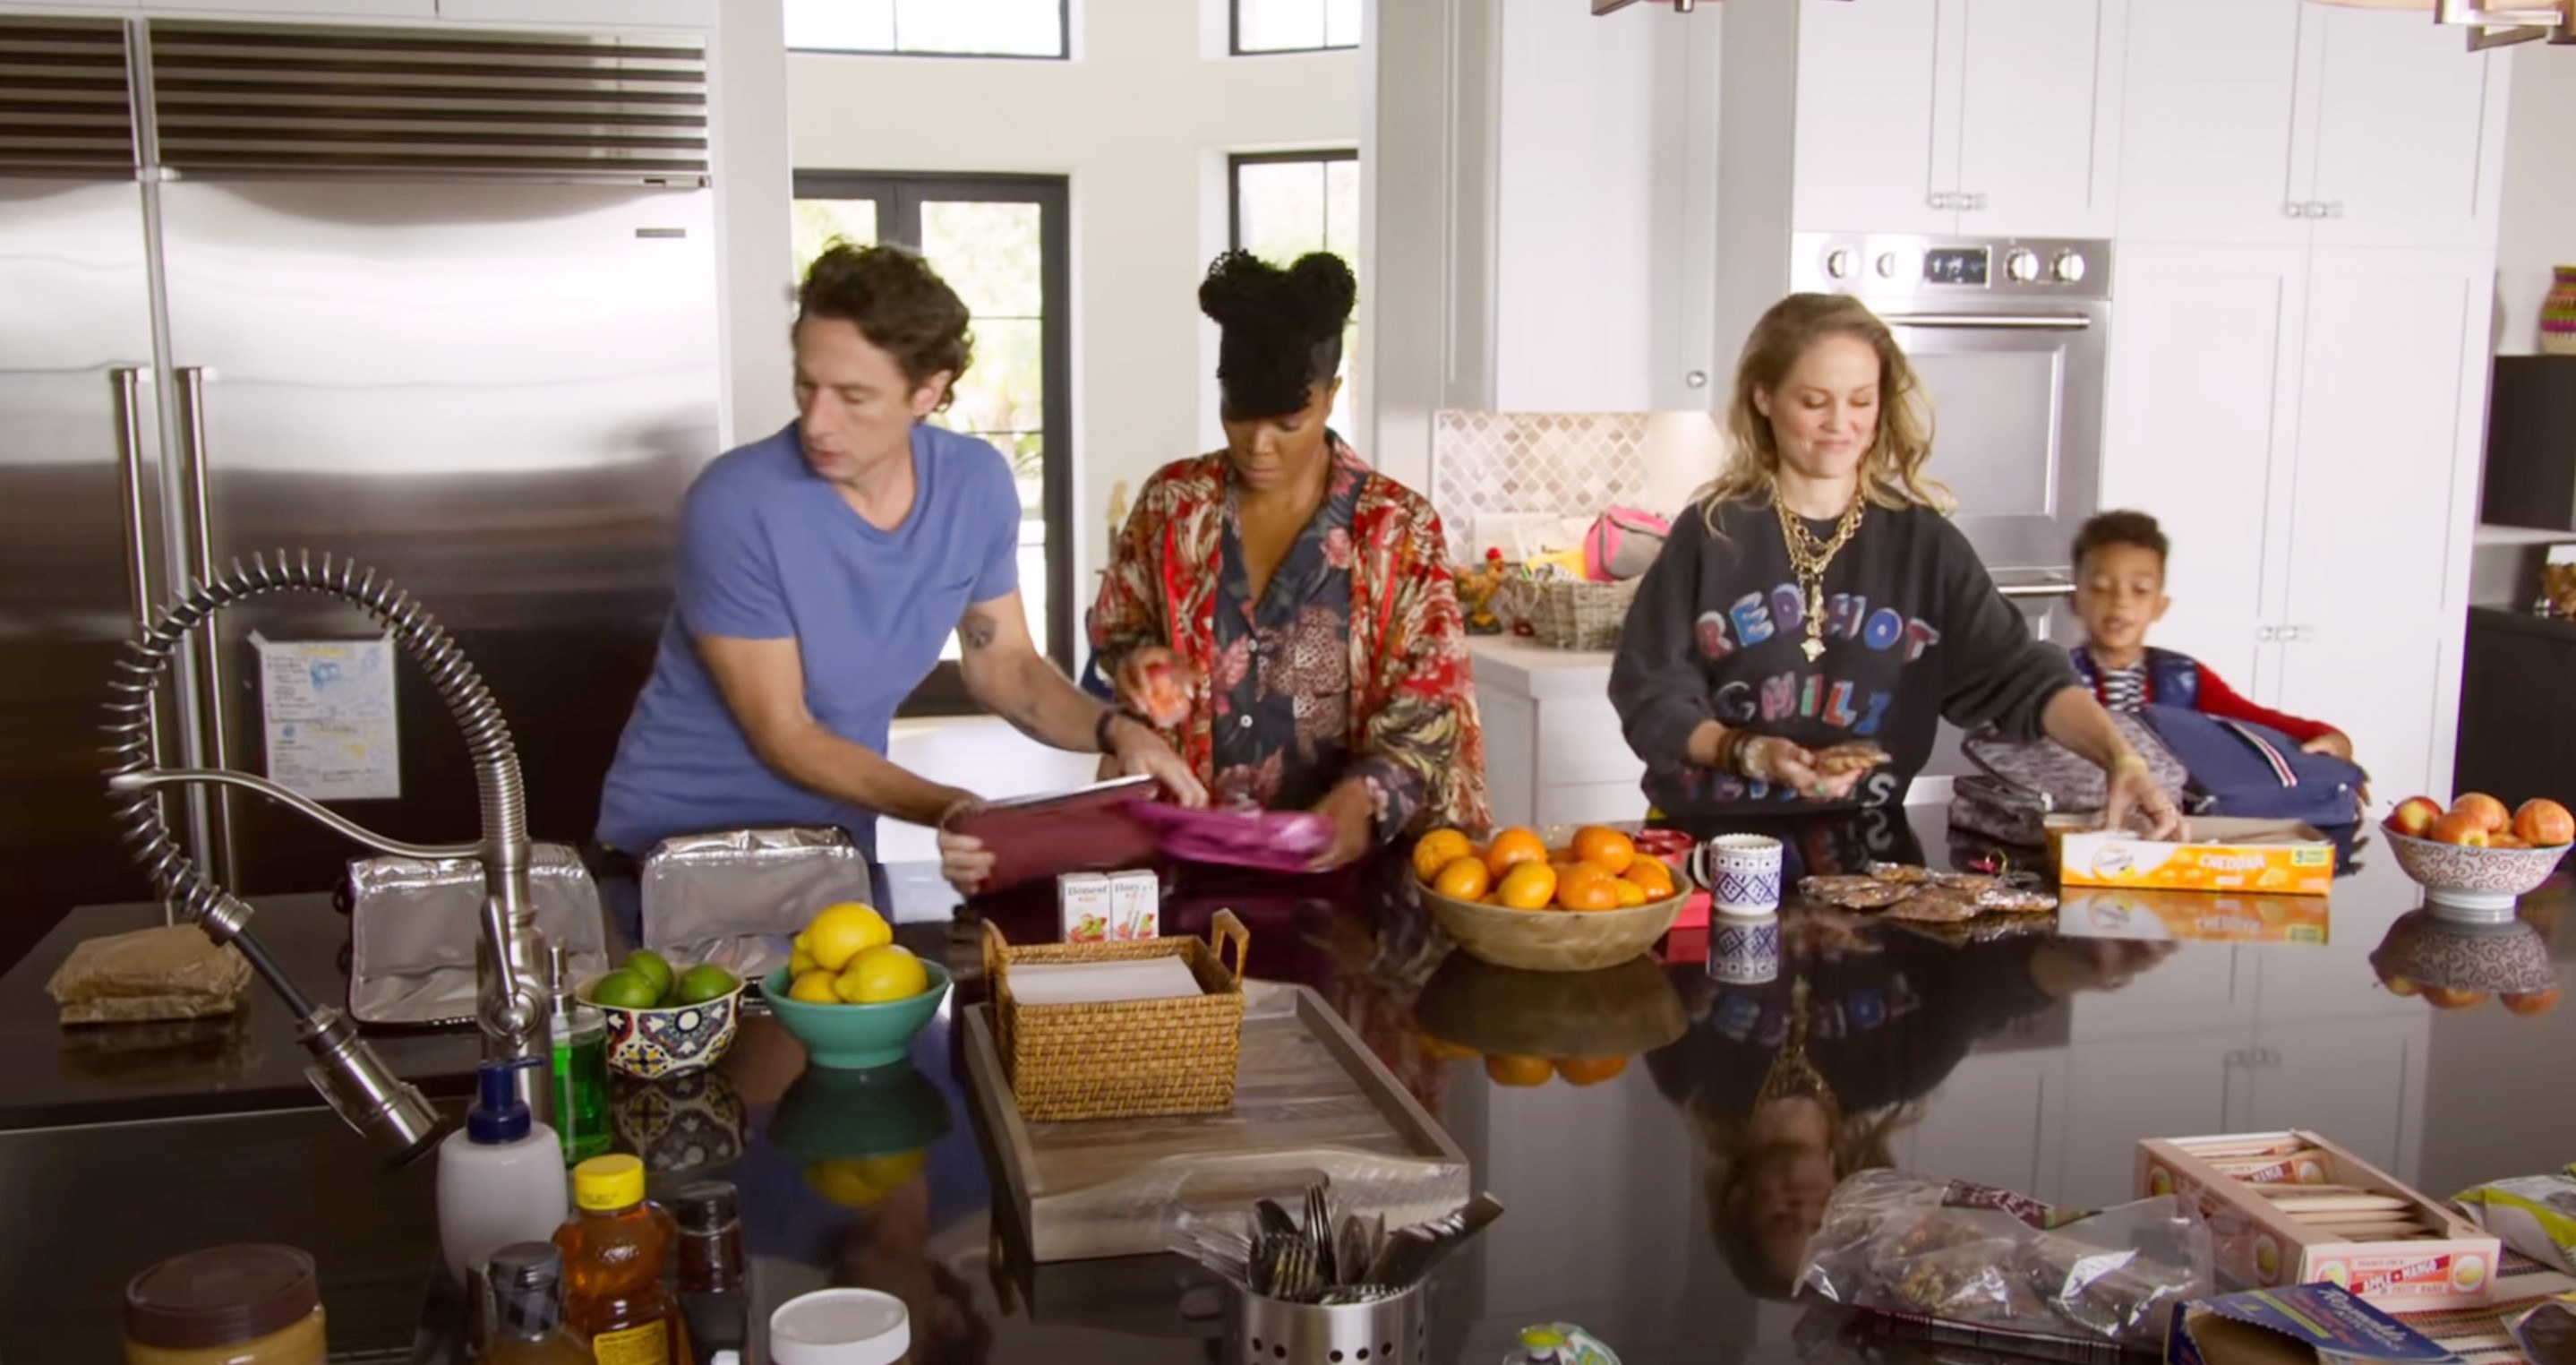 Zach Braff, Gabrielle Union, Erika Christensen, Leo Abelo Perry in a kitchen